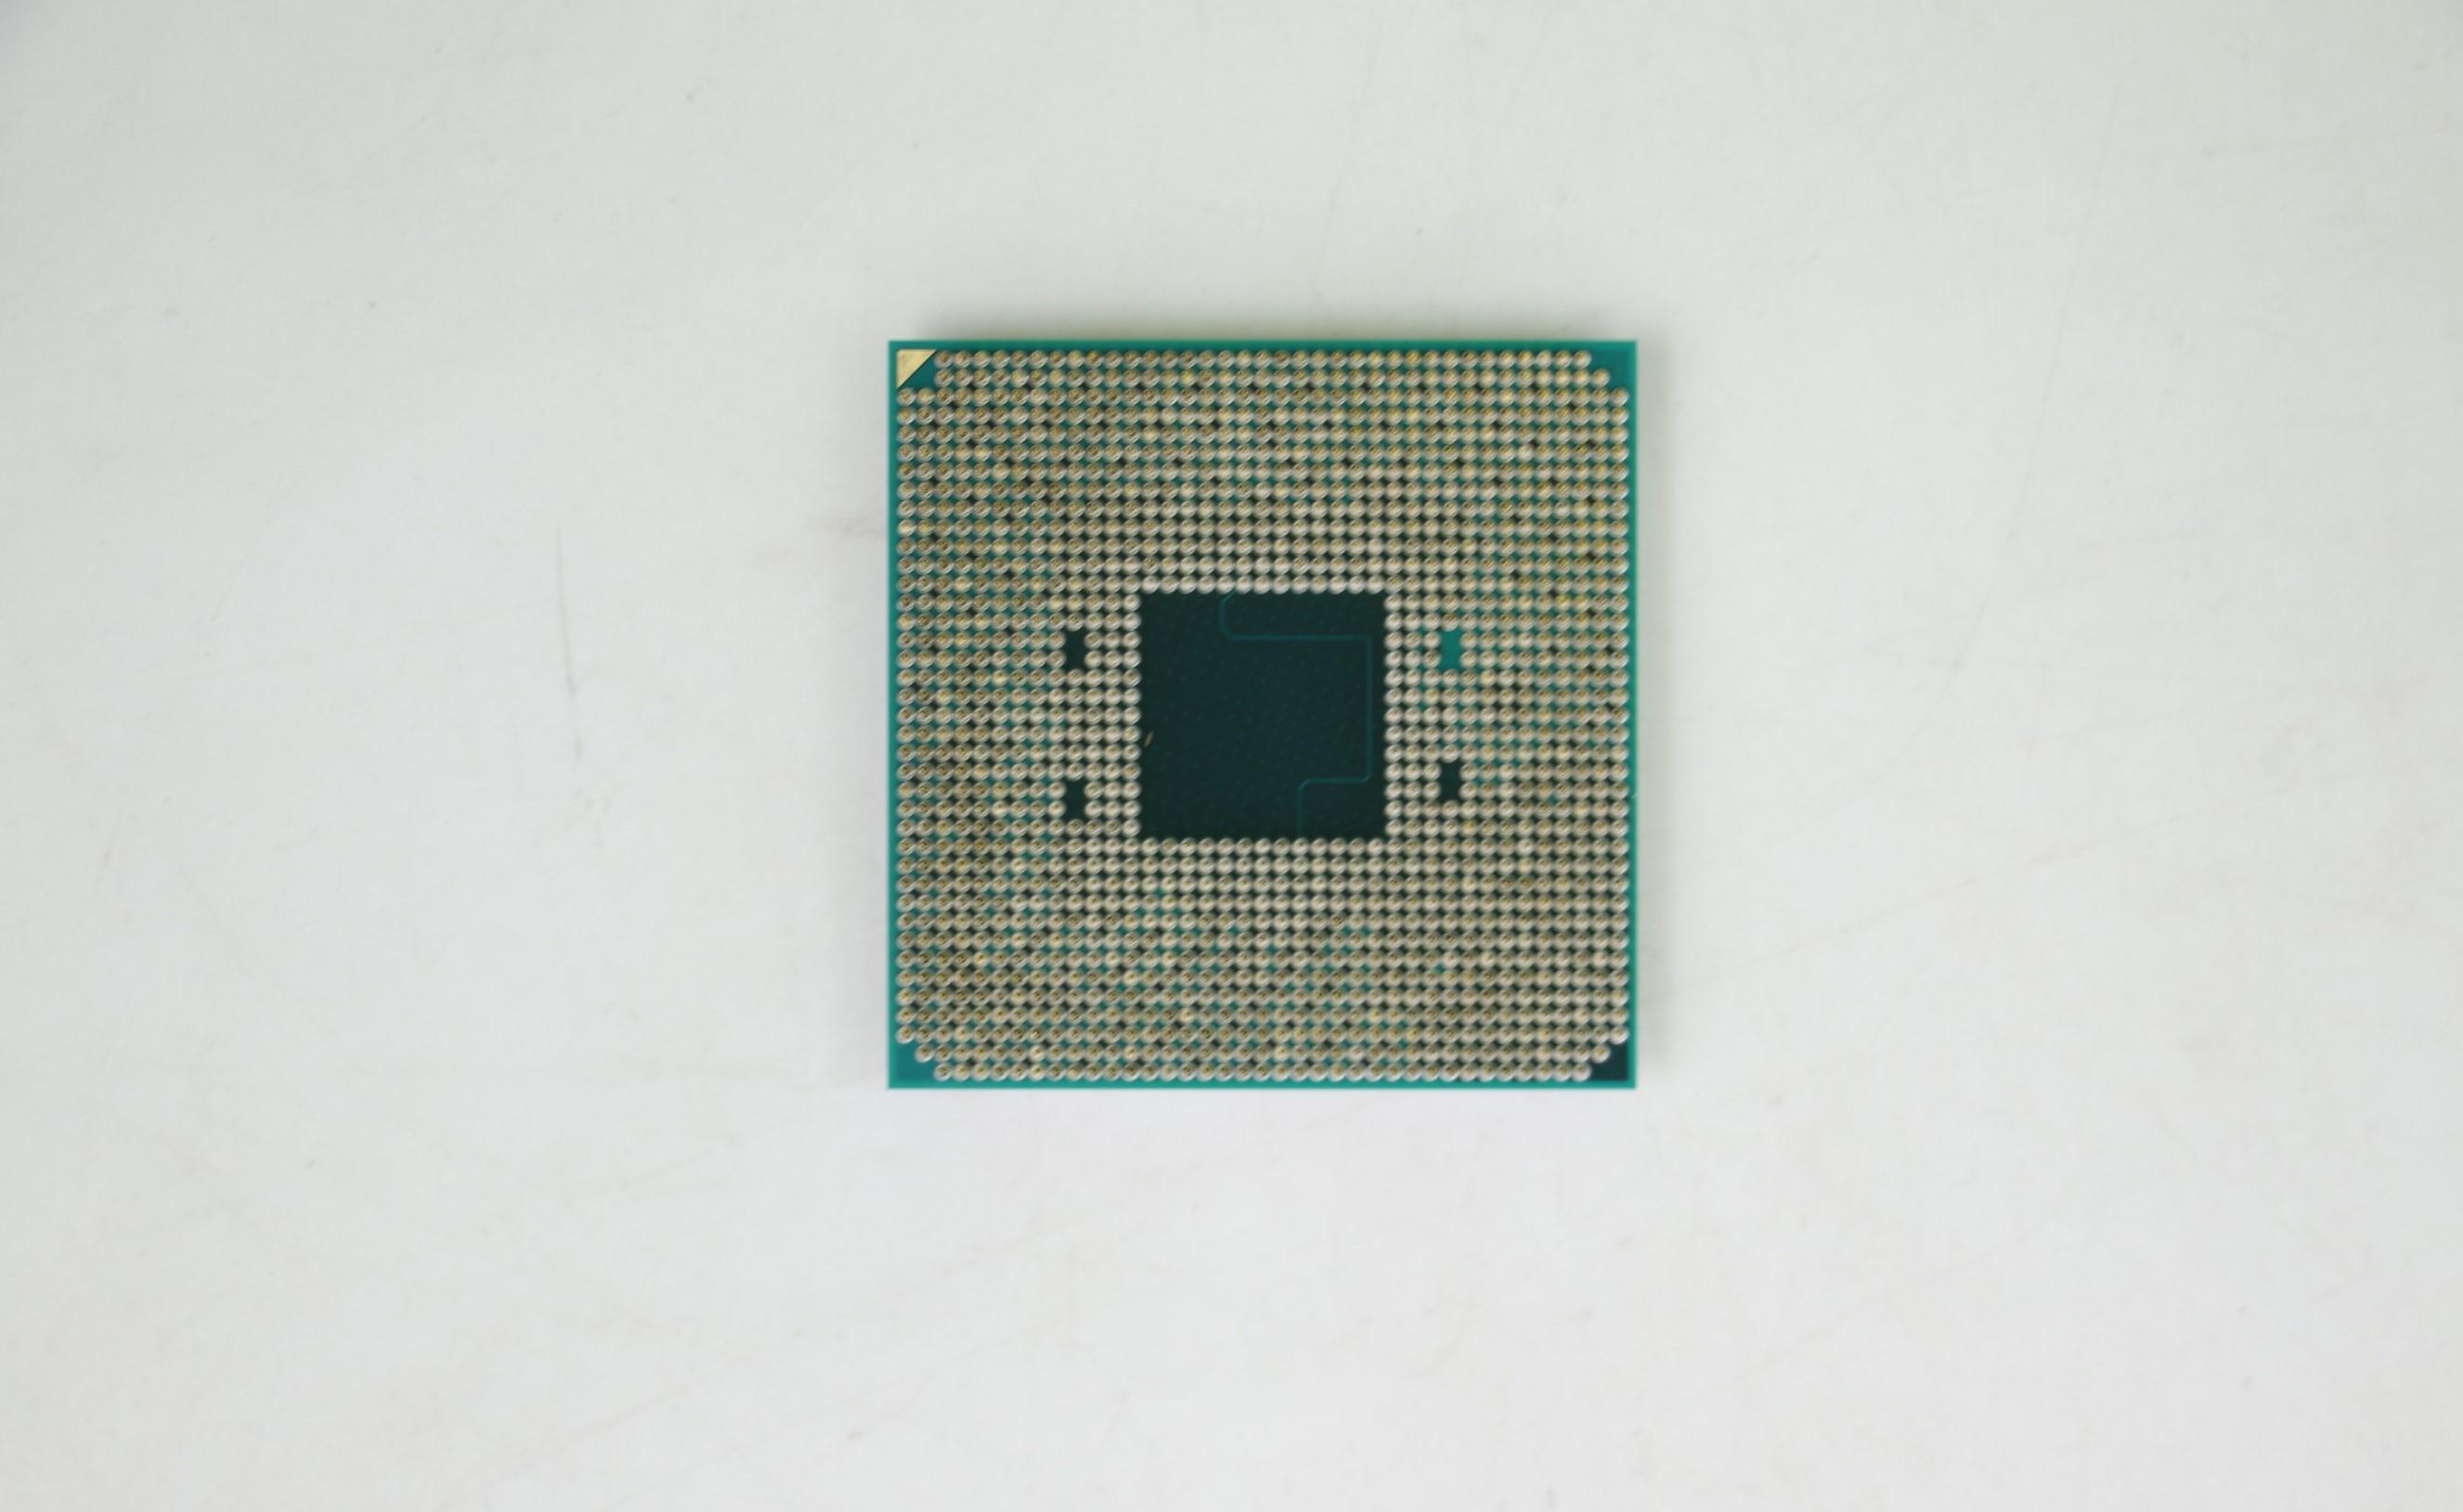 Lenovo Part  Original Lenovo AMD Ryzen 3 3200G 3.6GHz/4C/4M/65W AM4